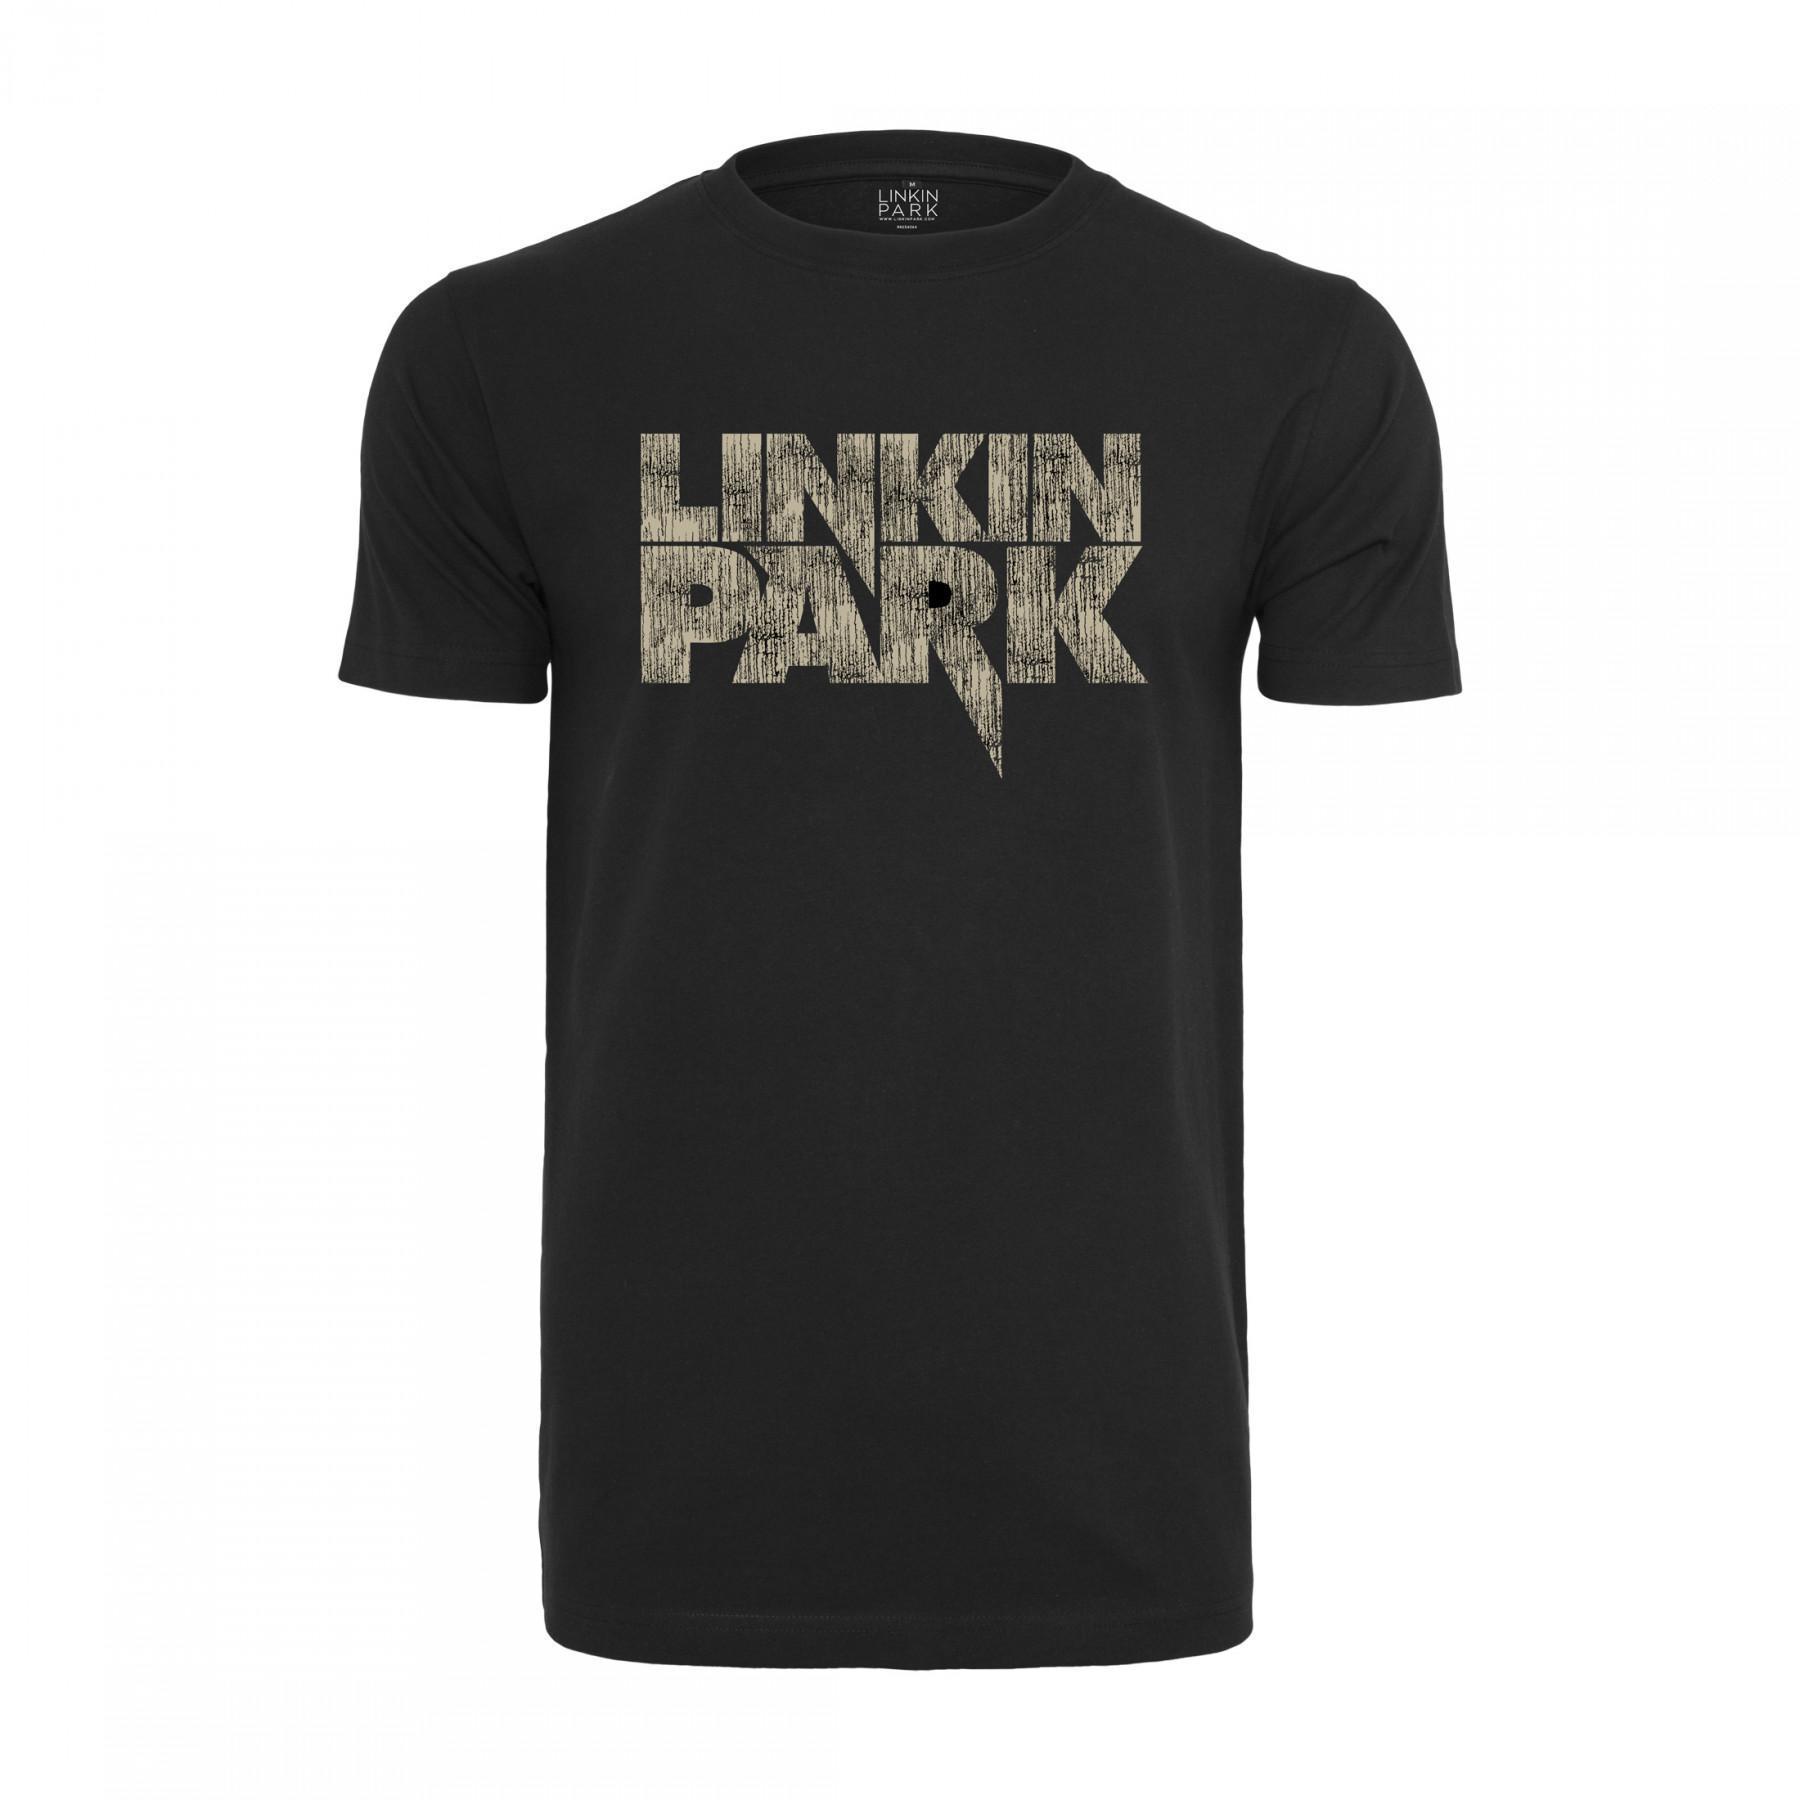 T-shirt Urban Classics linkin park distressed logo